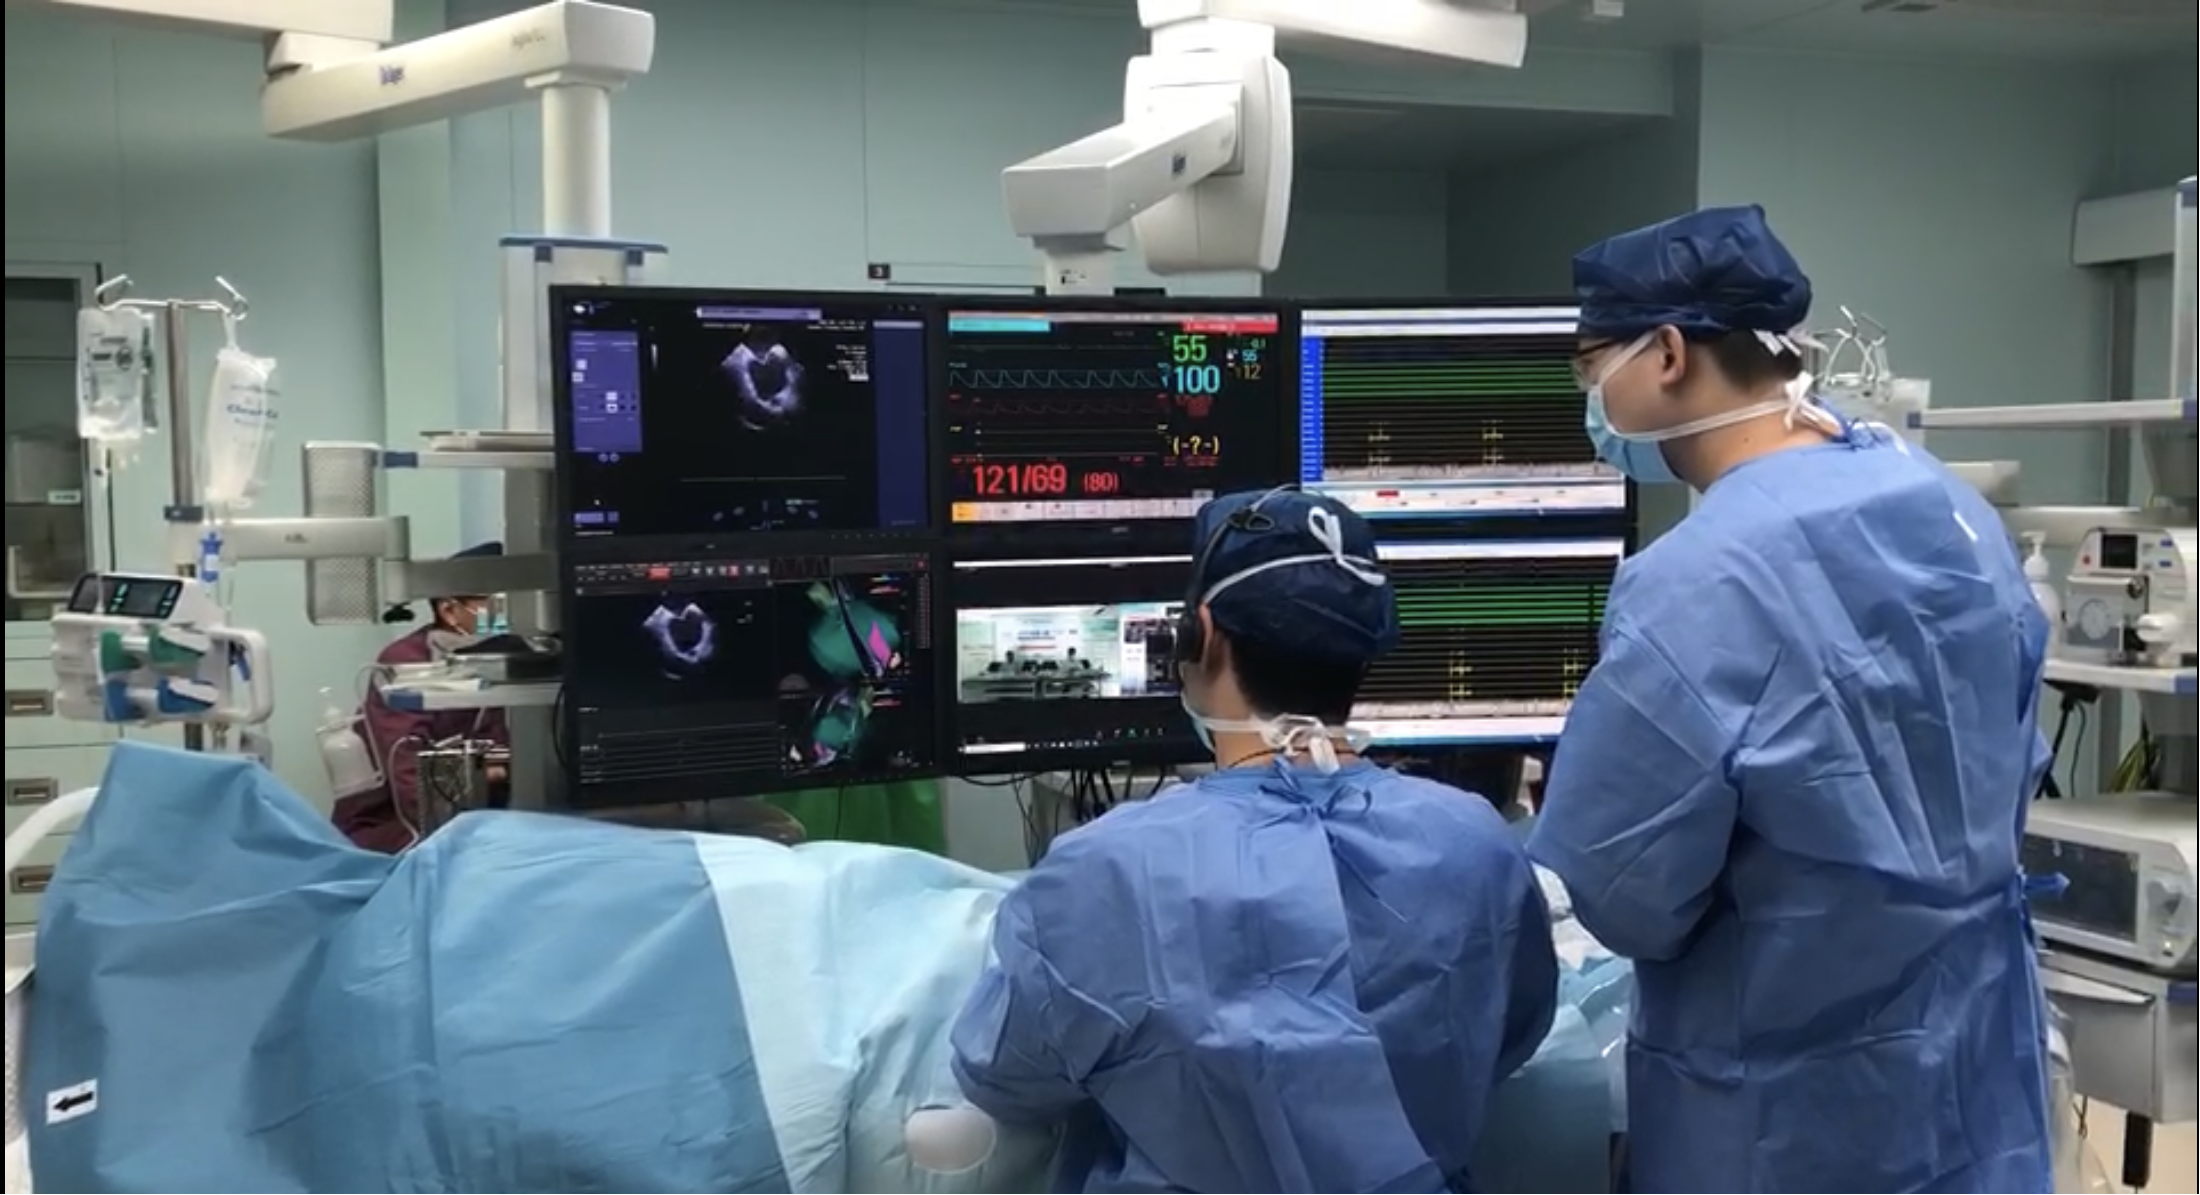 上海市第一人民医院启用华东地区首个 X Ray-Free 绿色电生理导管室